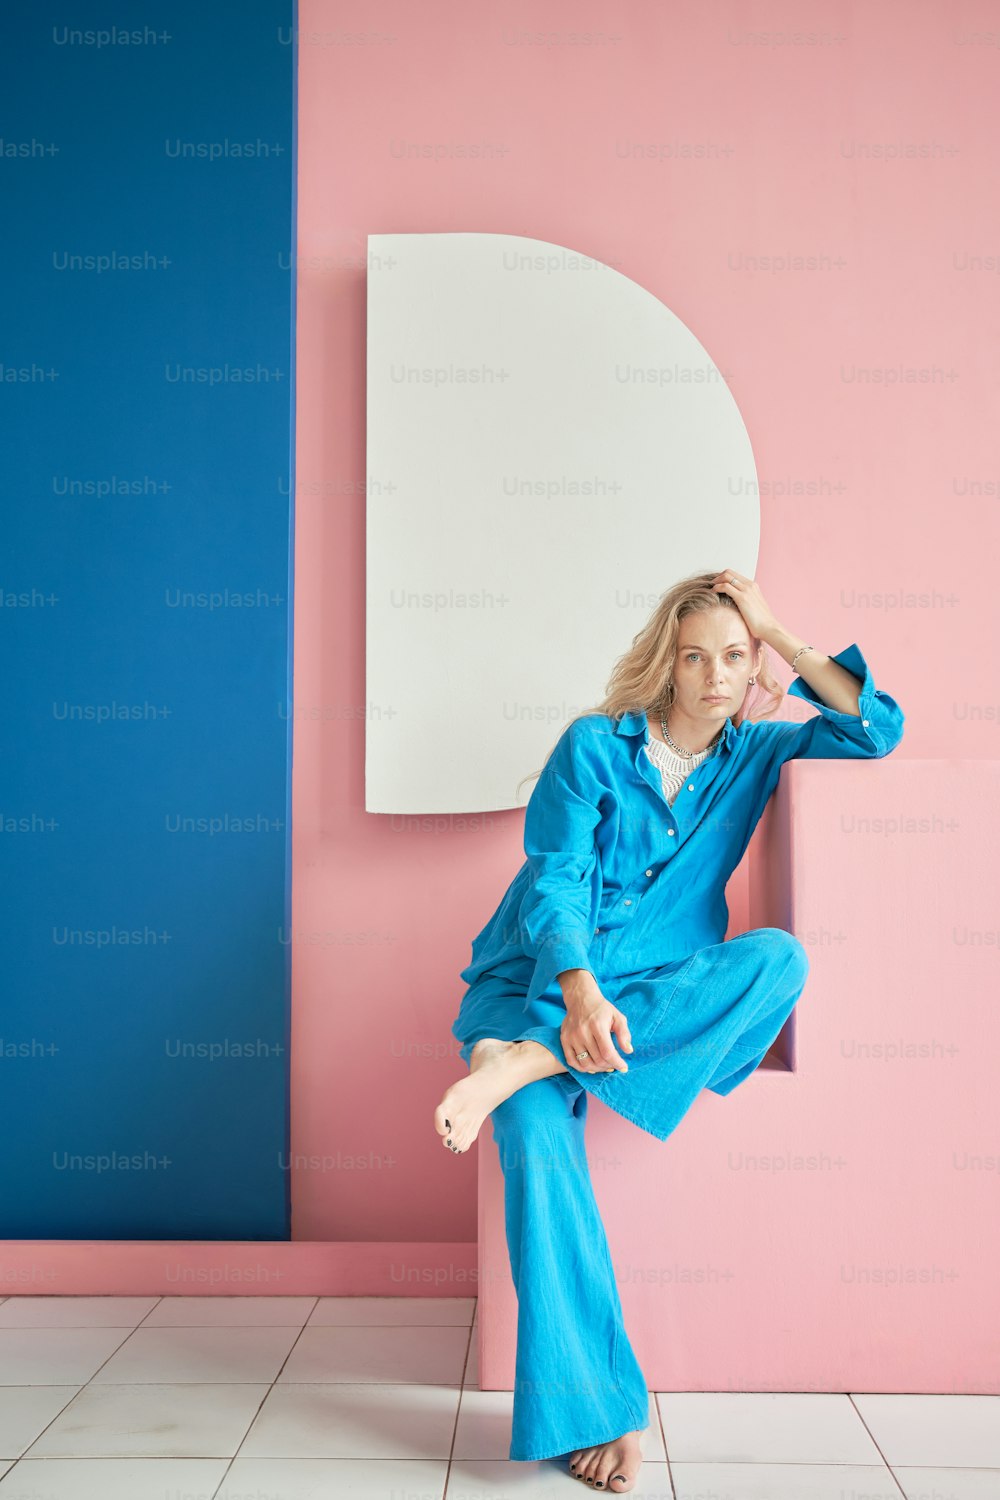 Una mujer con un mono azul sentada en una pared rosa y azul